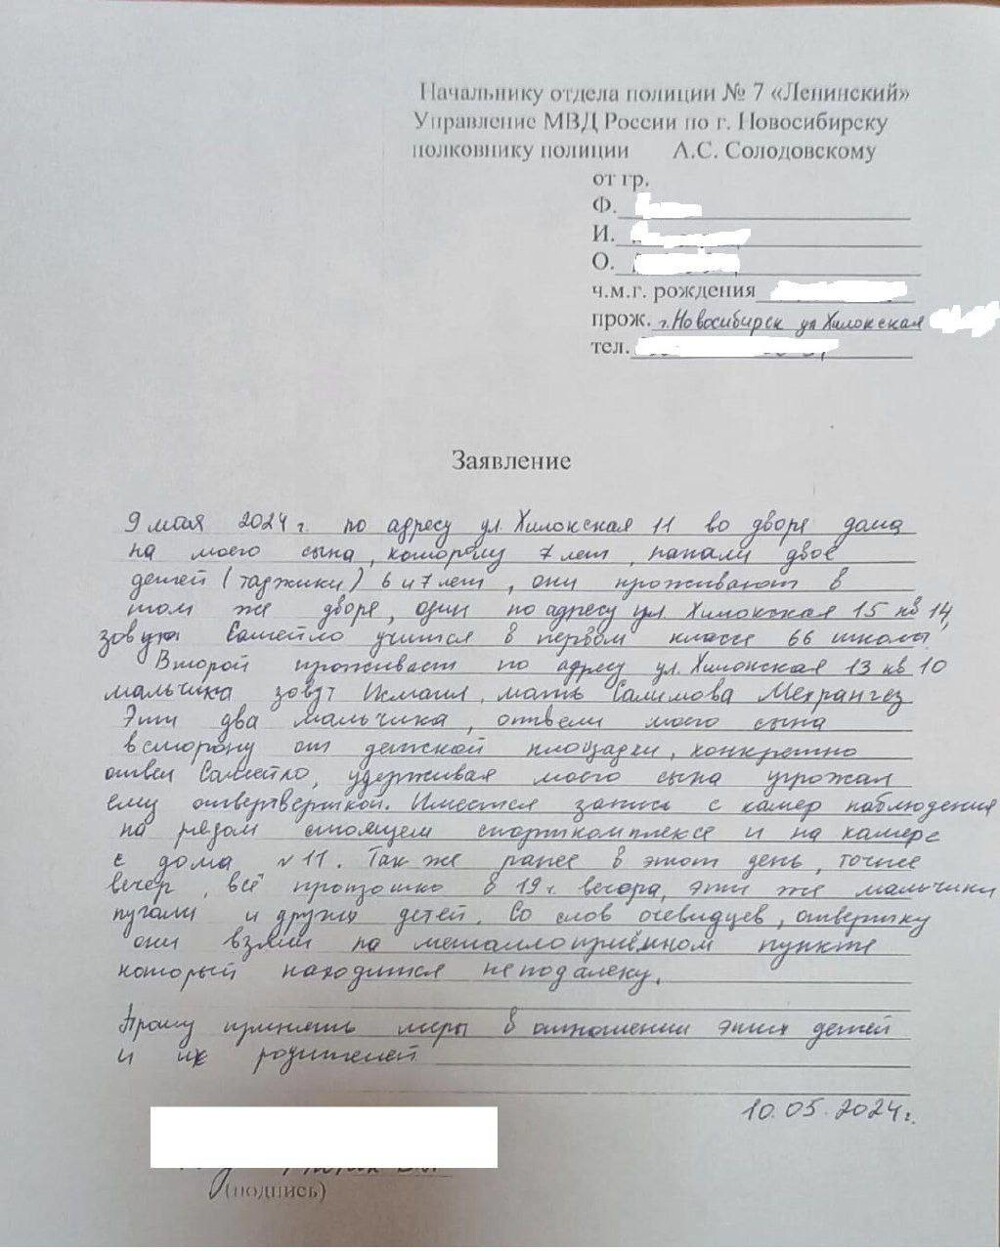 Бастрыкин заинтересовался нападением вооружённых отвёрткой детей на сверстника в Новосибирске